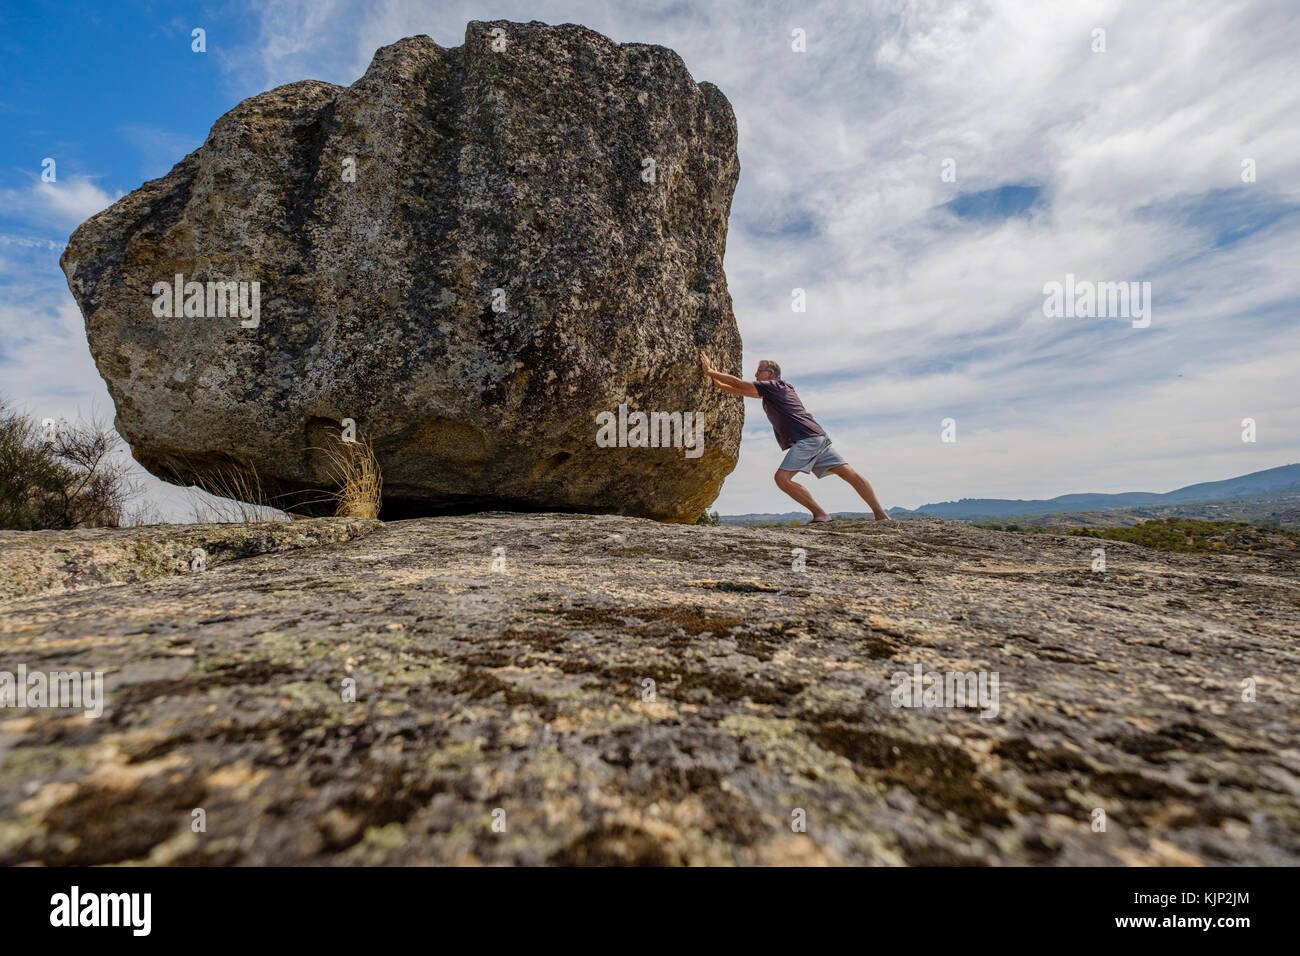 L'homme en poussant un rocher sur un rocher Banque D'Images